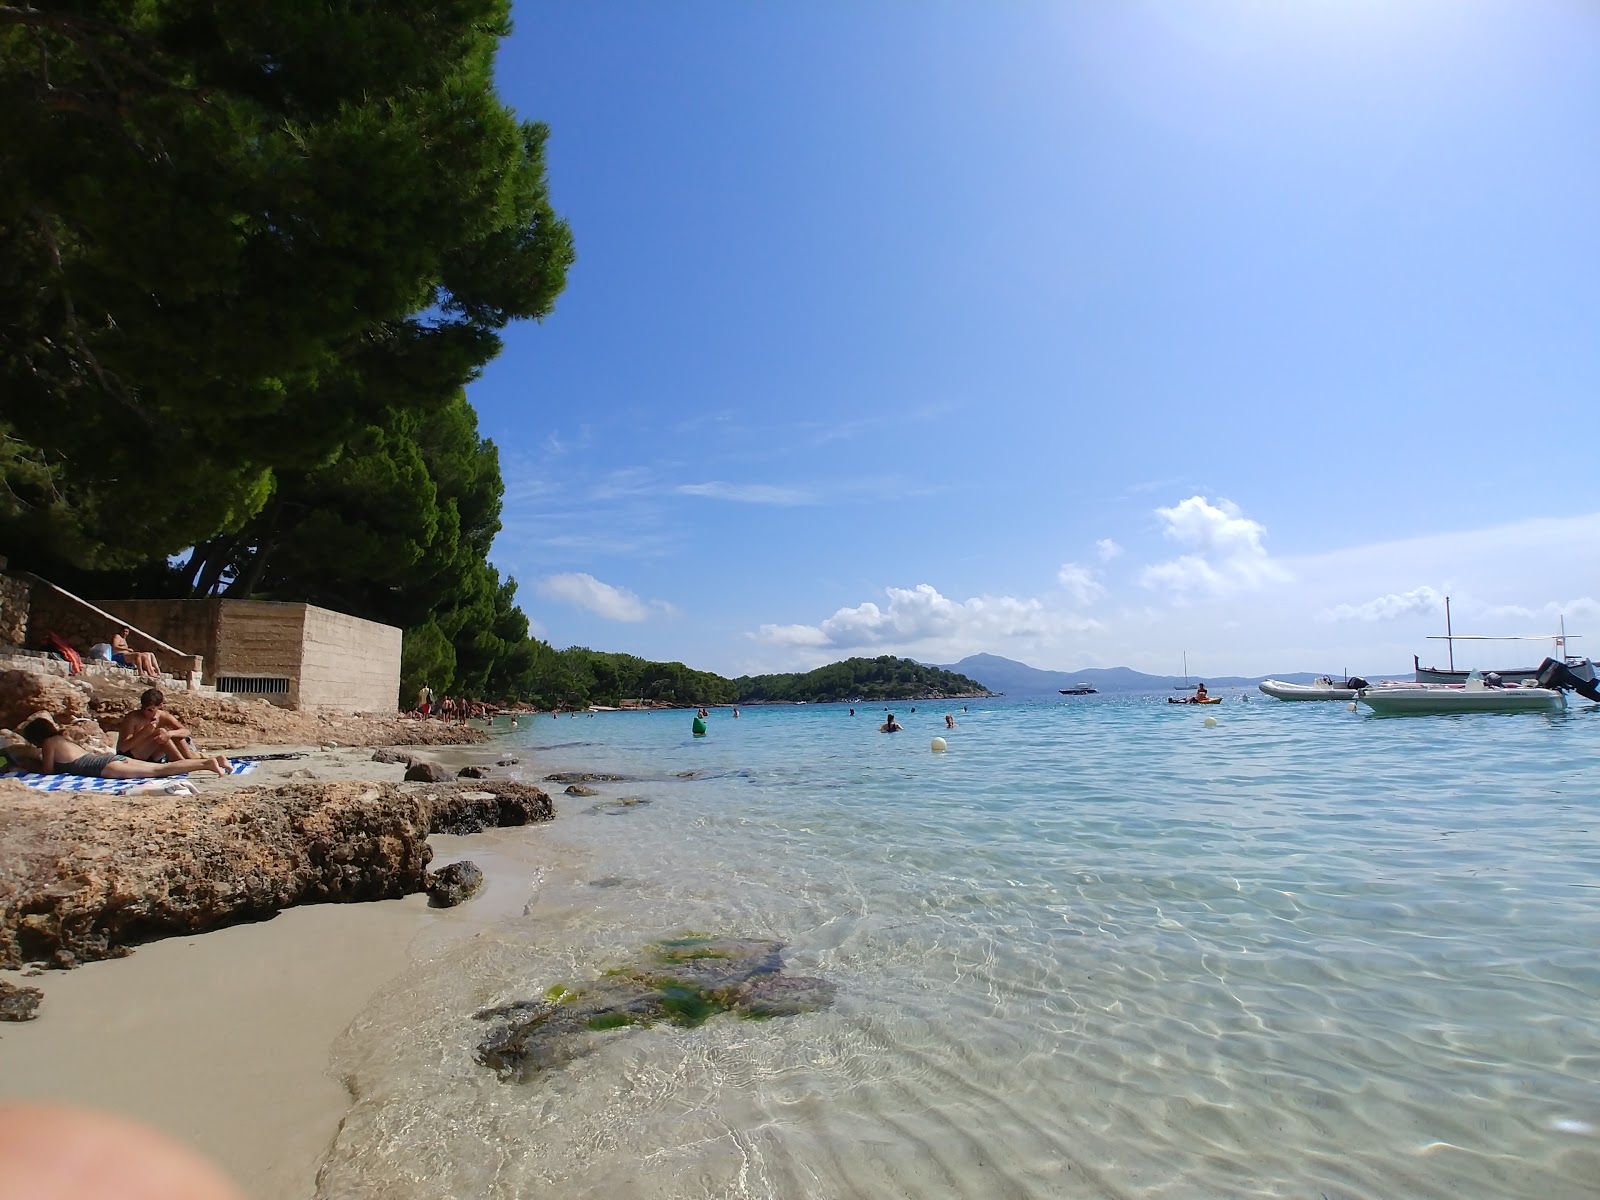 Fotografija Plaža Formentor nahaja se v naravnem okolju